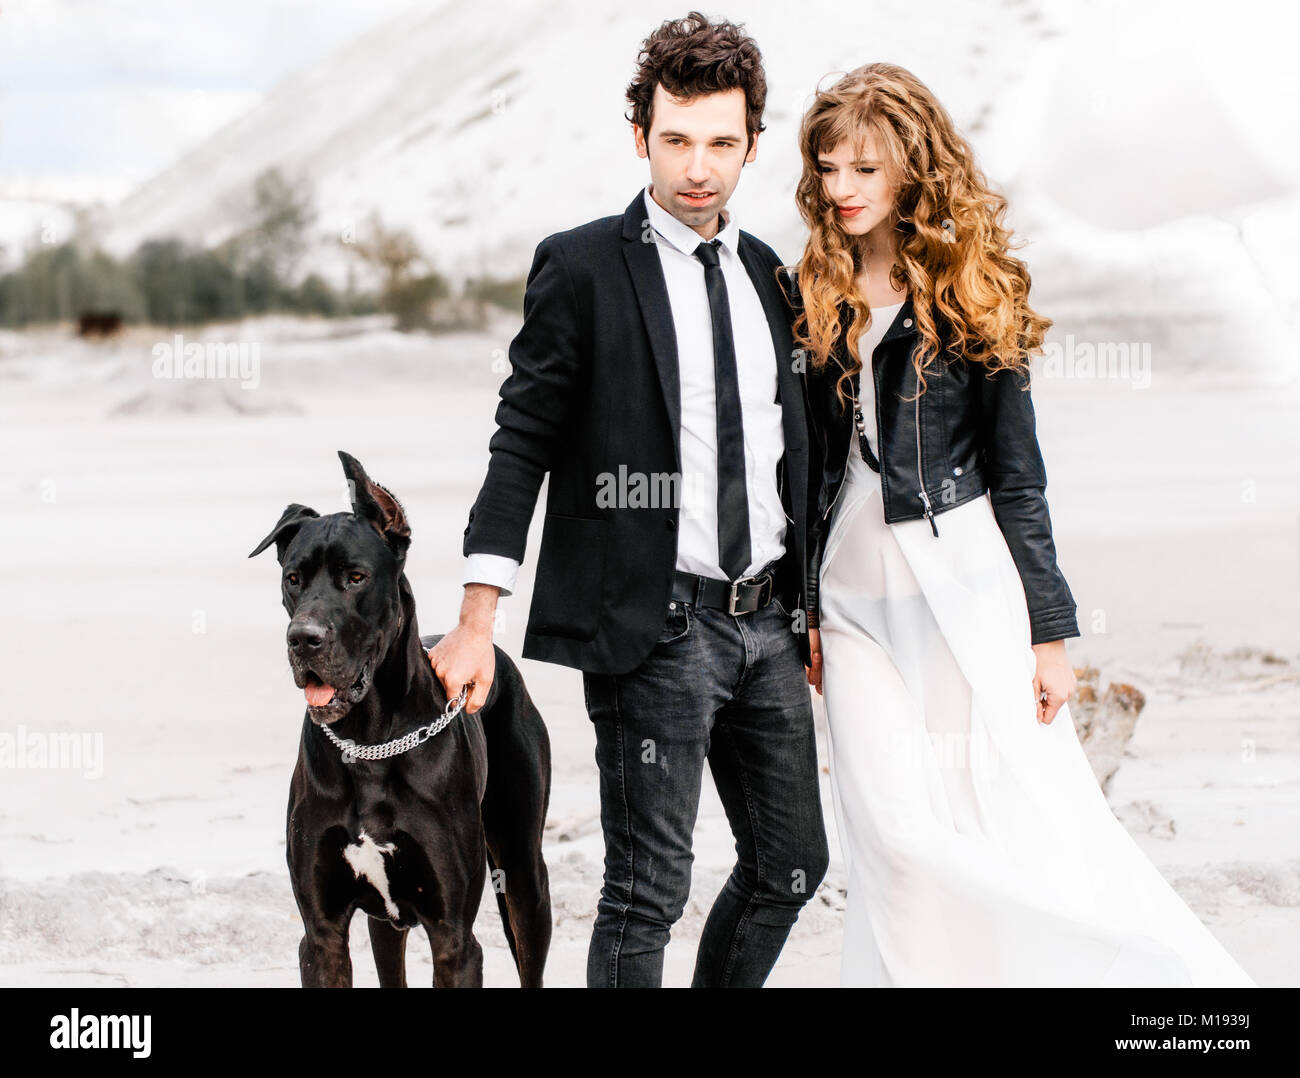 Stilvolle Paar mit großen Hund in der Wüste. Konzept der erfolgreichen Beziehung, Stil und glückliche Momente. Mode Hochzeit Fotografie Stockfoto